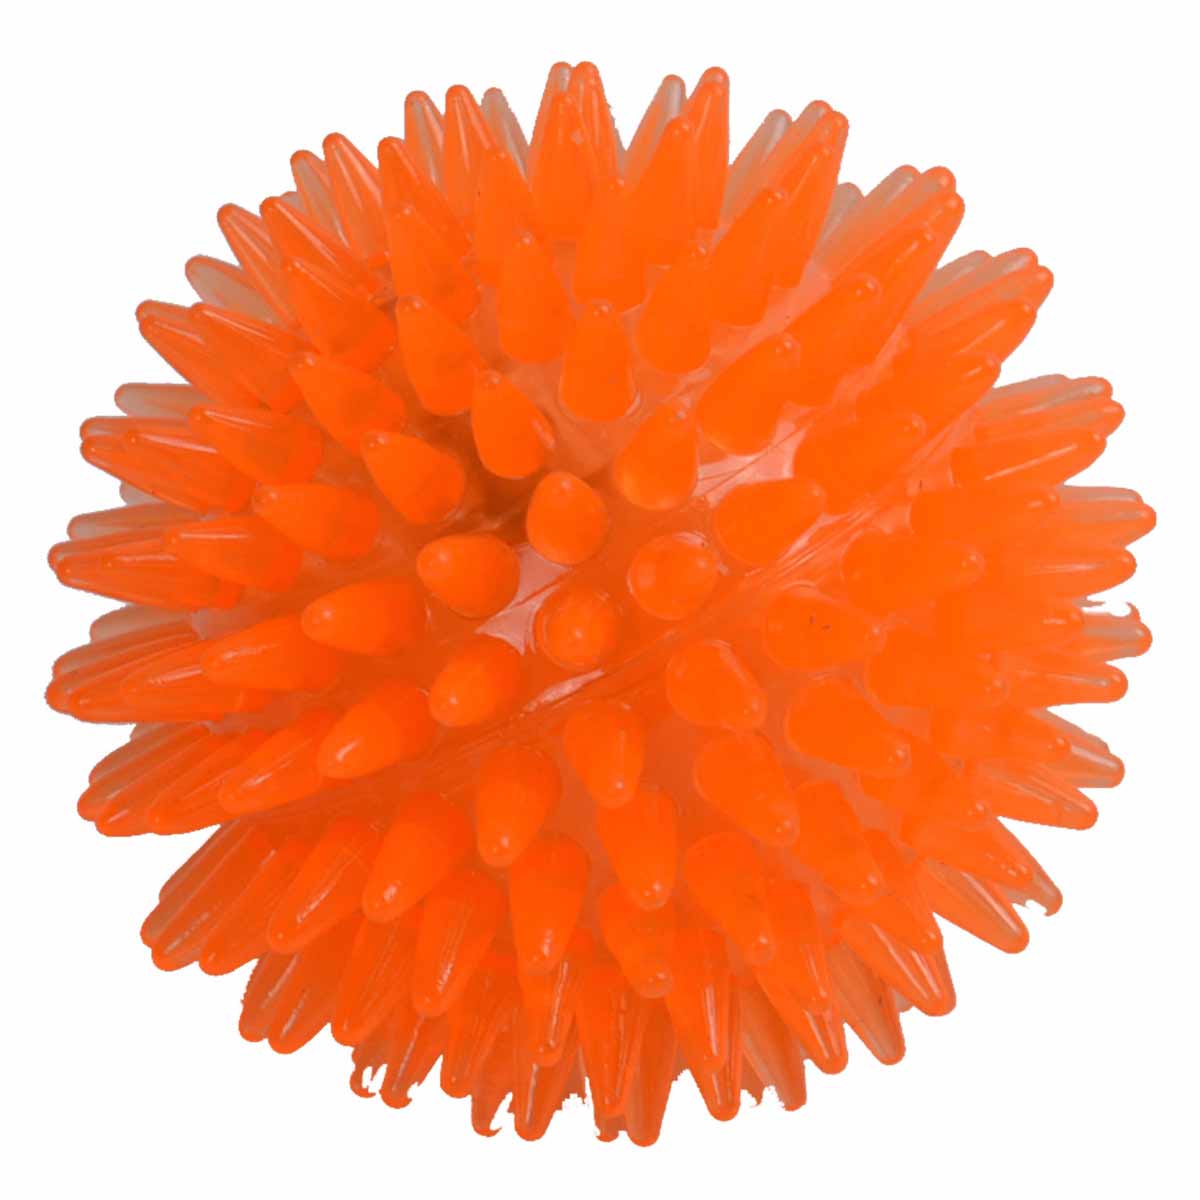 Oranger Klangball mit Licht - Hundespielzeug